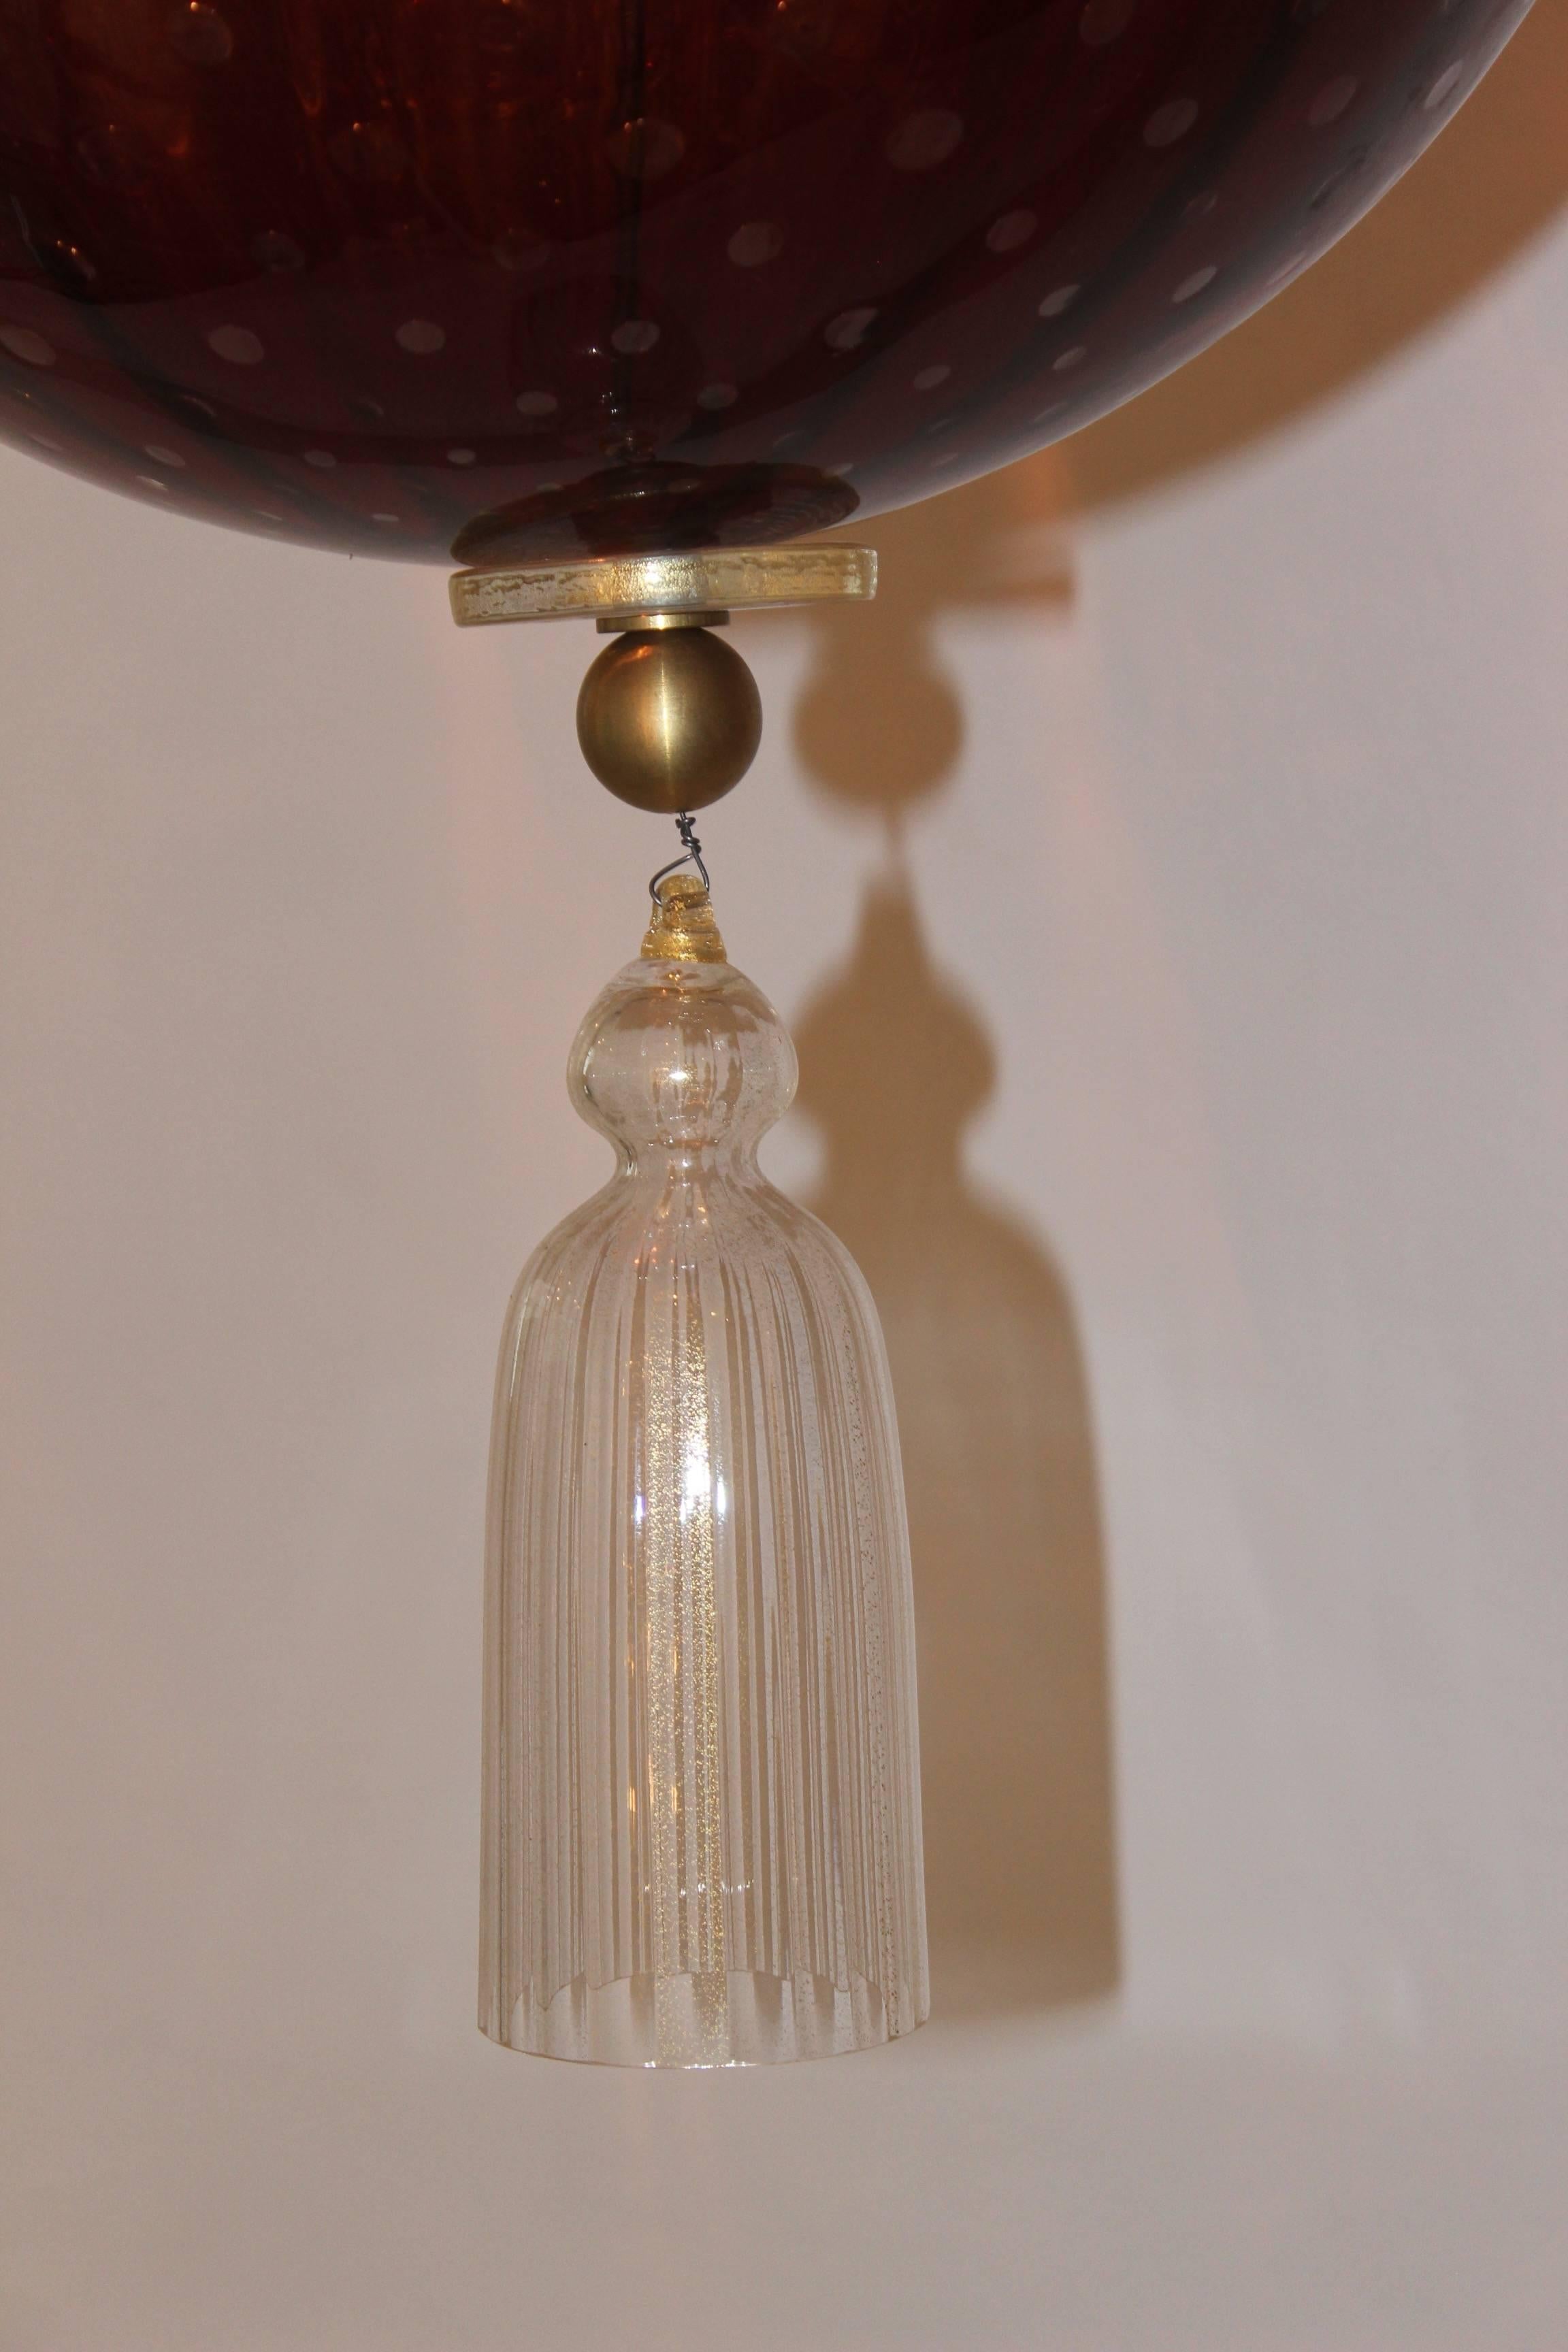 Italian Lovely Venetian Lantern from Handmade Red Blown Murano Glass For Sale